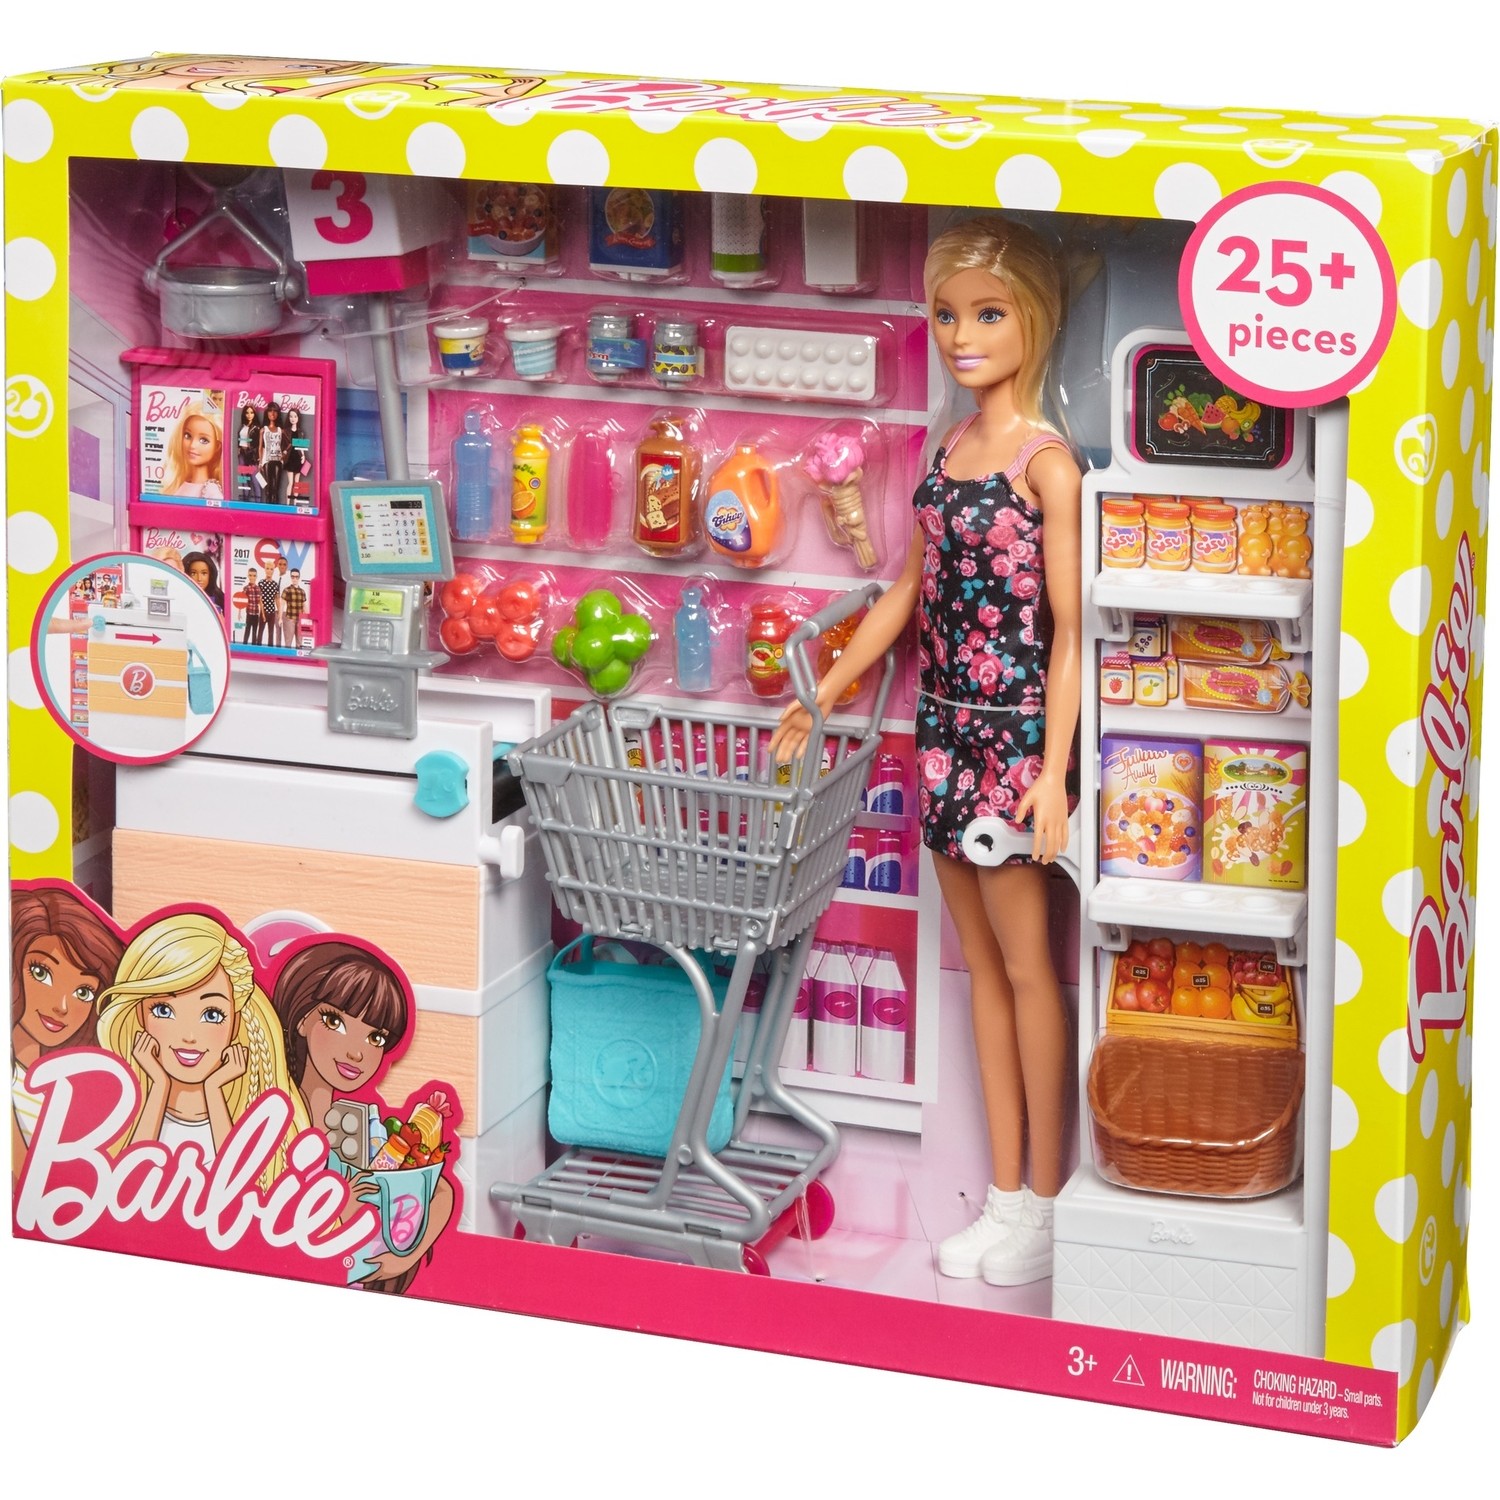 Barbie Süpermarkette Oyun Seti, Alışveriş Sepeti ve 25'ten Fiyatı
